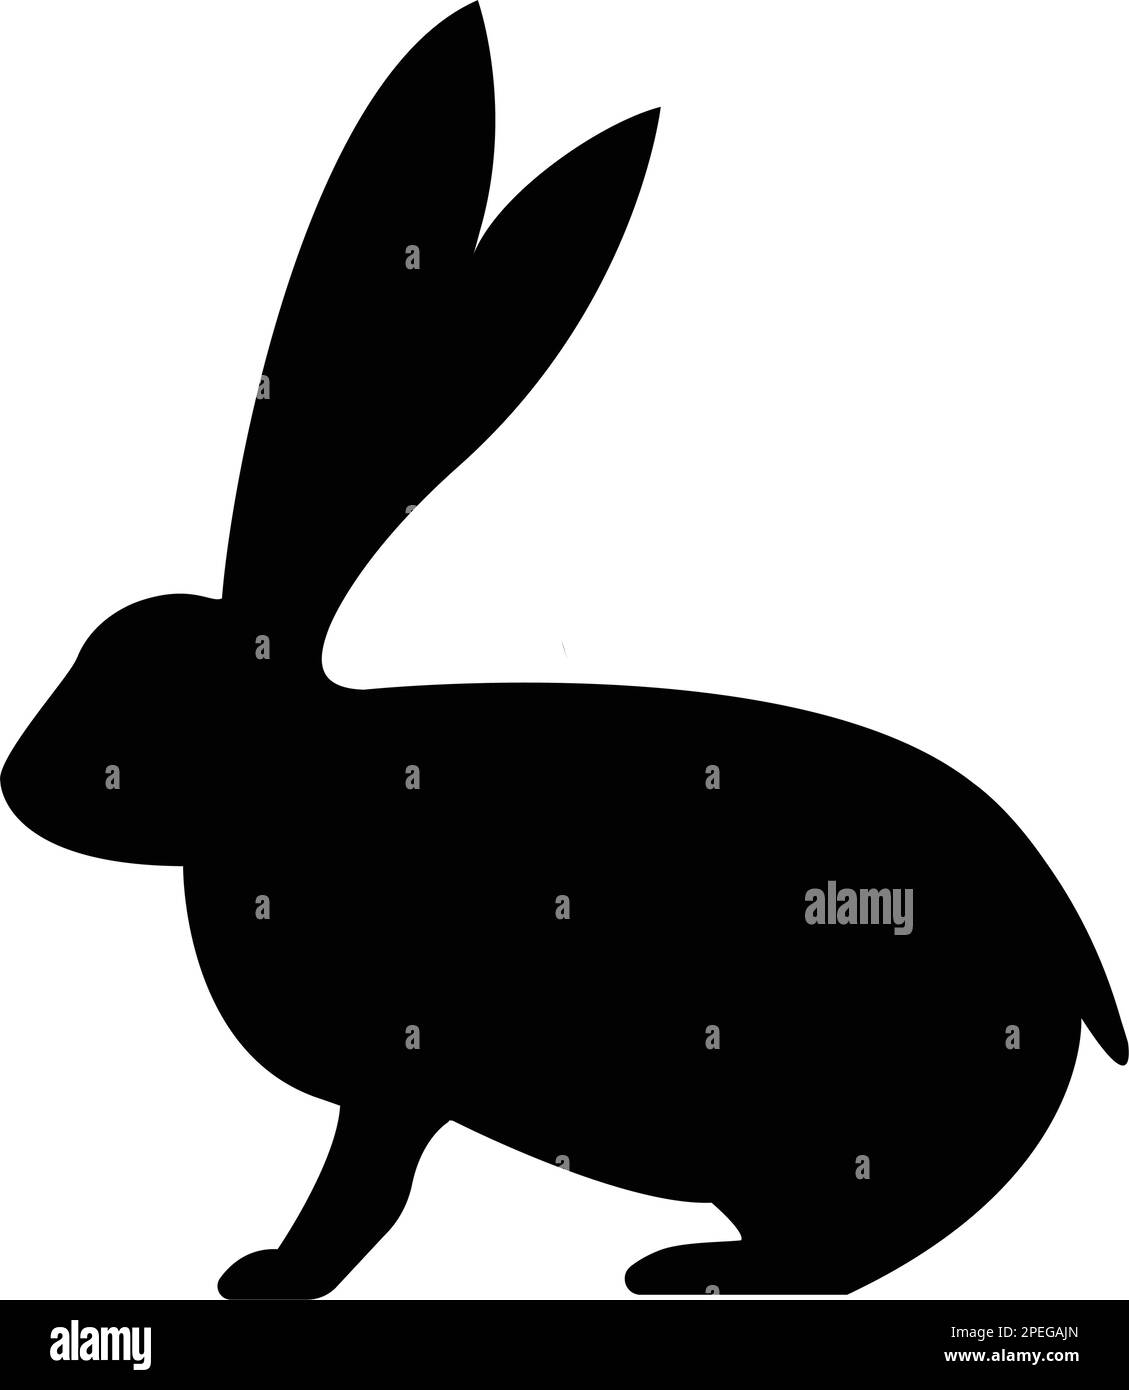 modello vettoriale semplice ed elegante con logo di coniglio Illustrazione Vettoriale